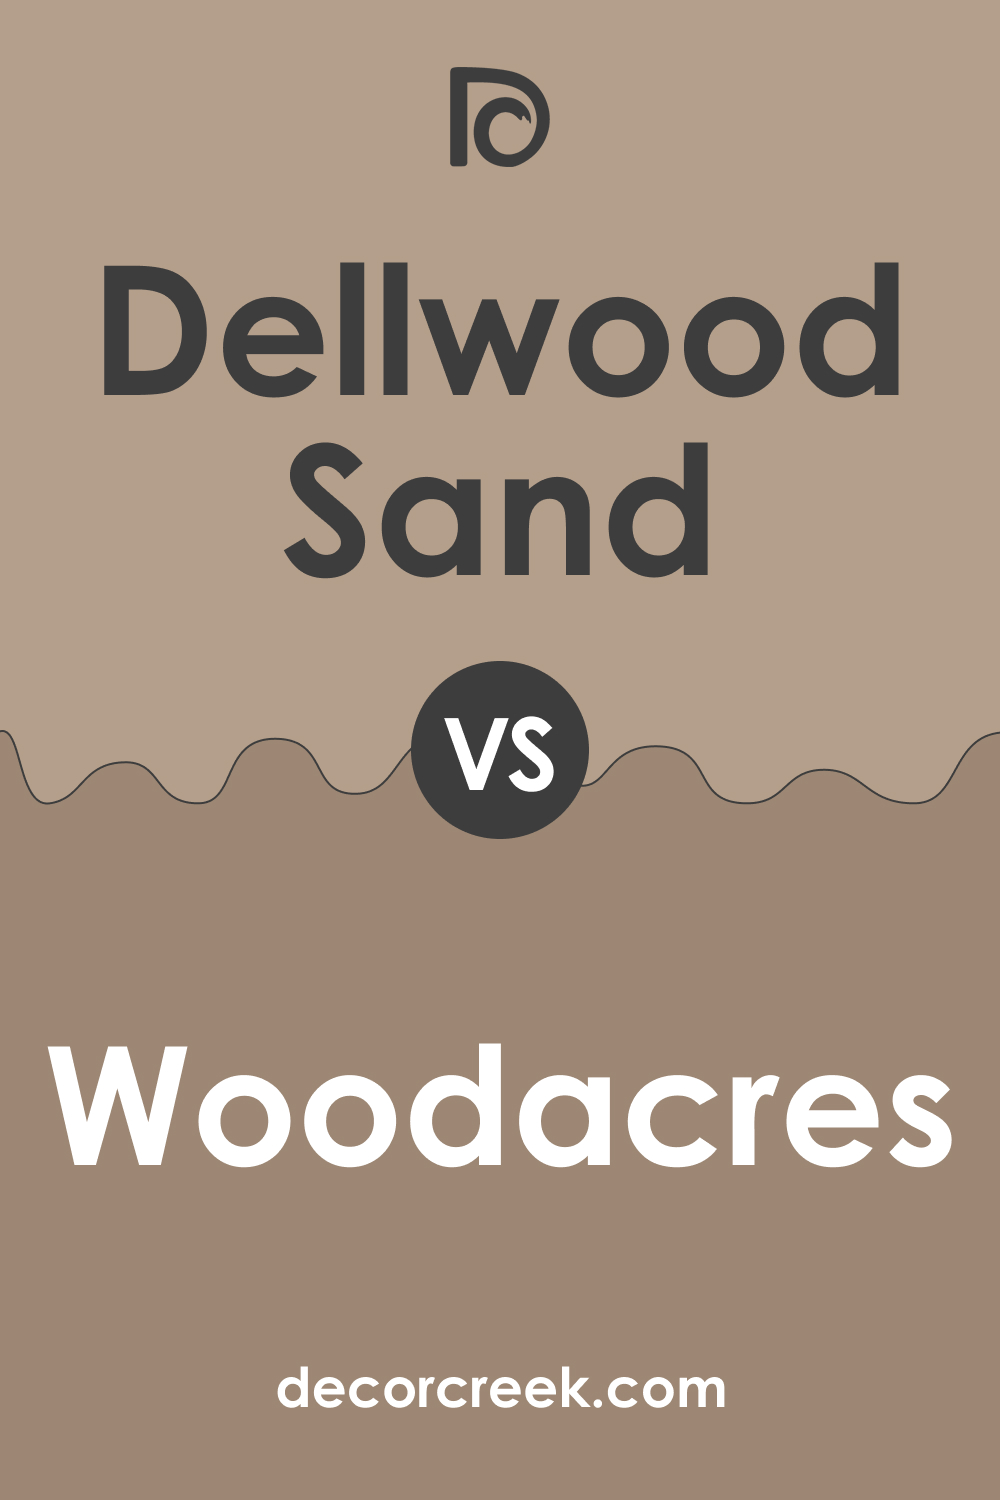 Dellwood Sand 1019 vs. BM 1020 Woodacres